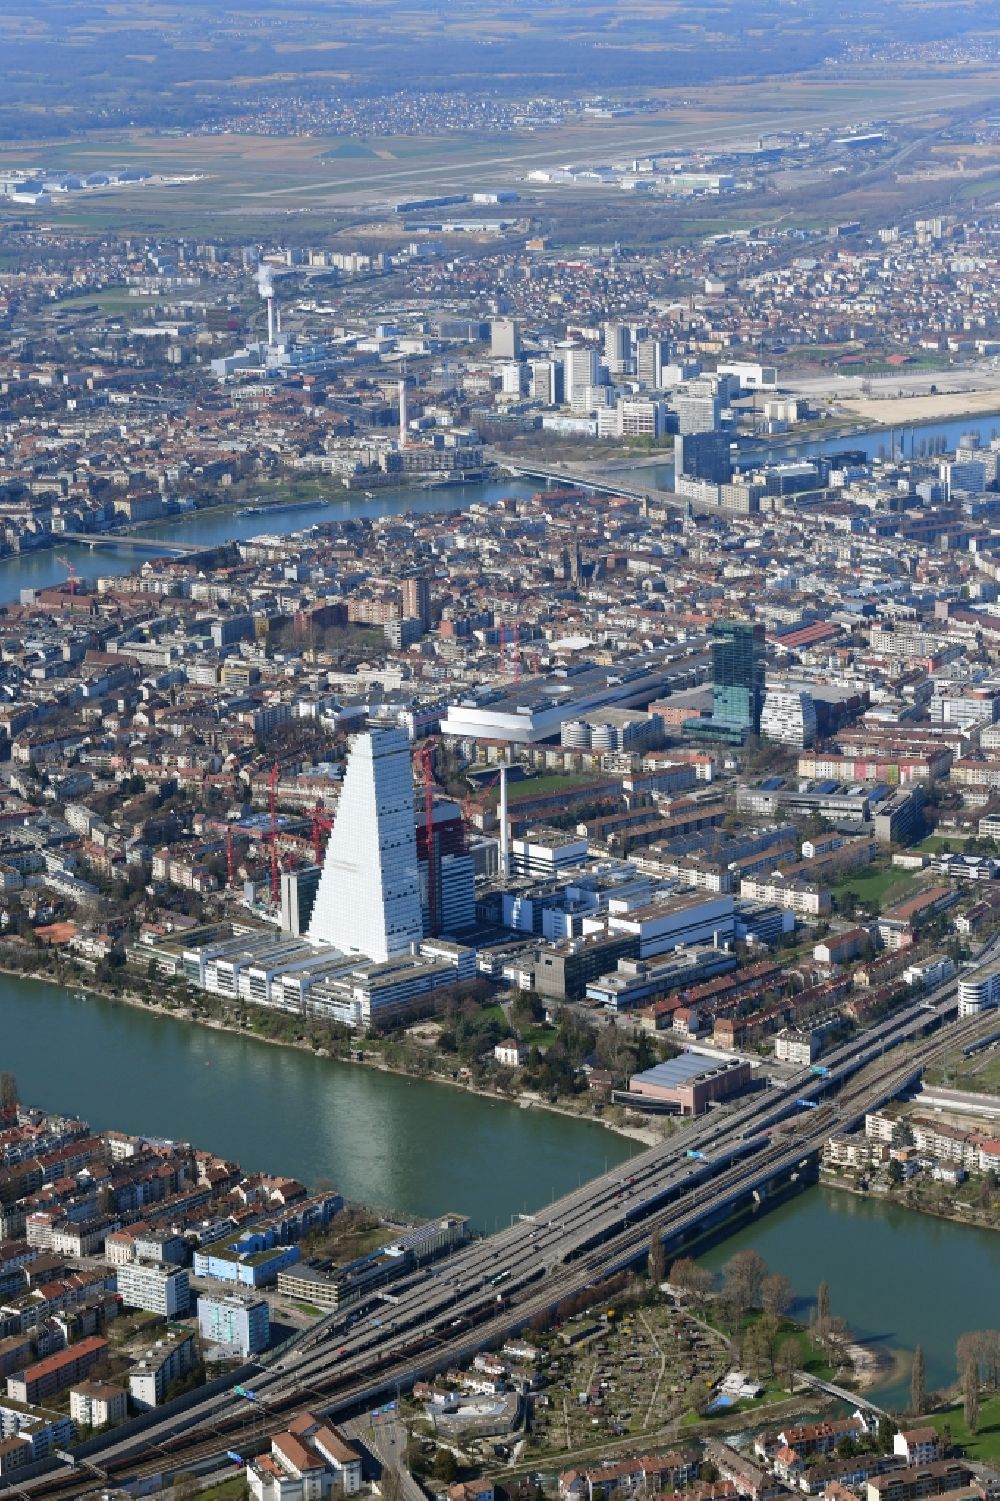 Basel aus der Vogelperspektive: Stadtansicht vom Innenstadtbereich am Rhein bei der Schwarzwaldbrücke und dem Roche Hochhaus in Basel, Schweiz